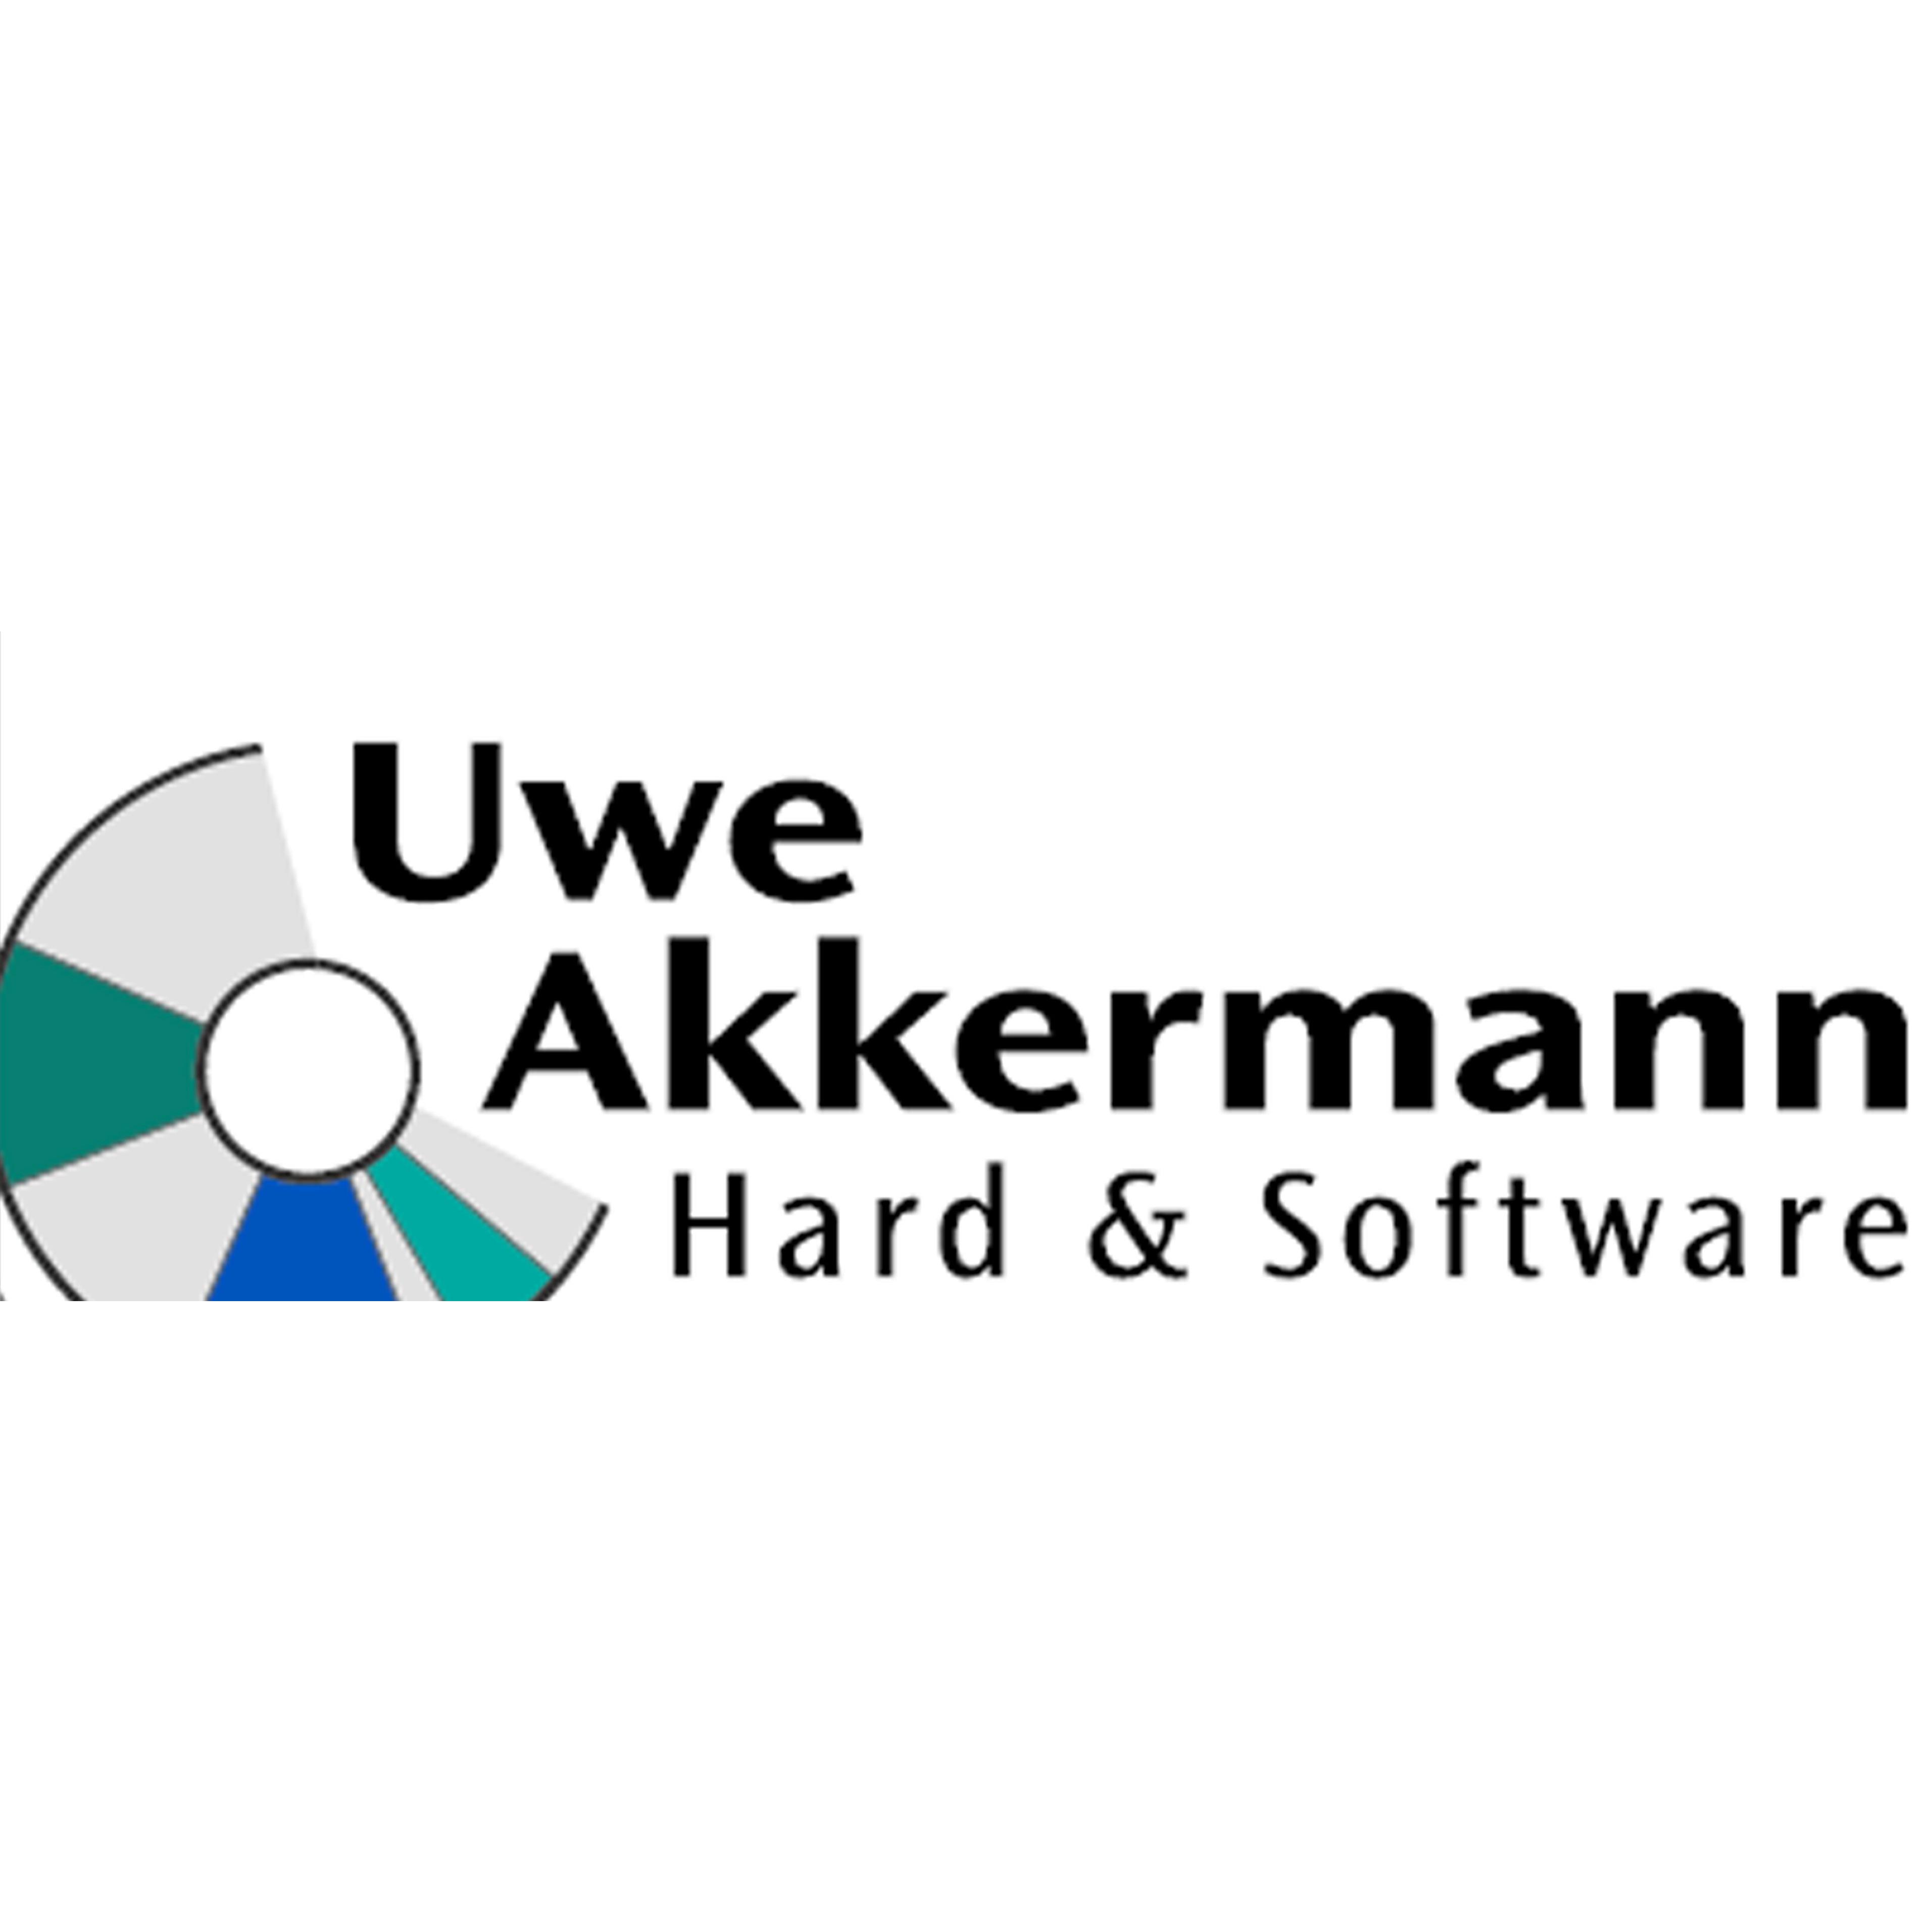 Logo von Hard und Software Inh. Uwe Akkermann